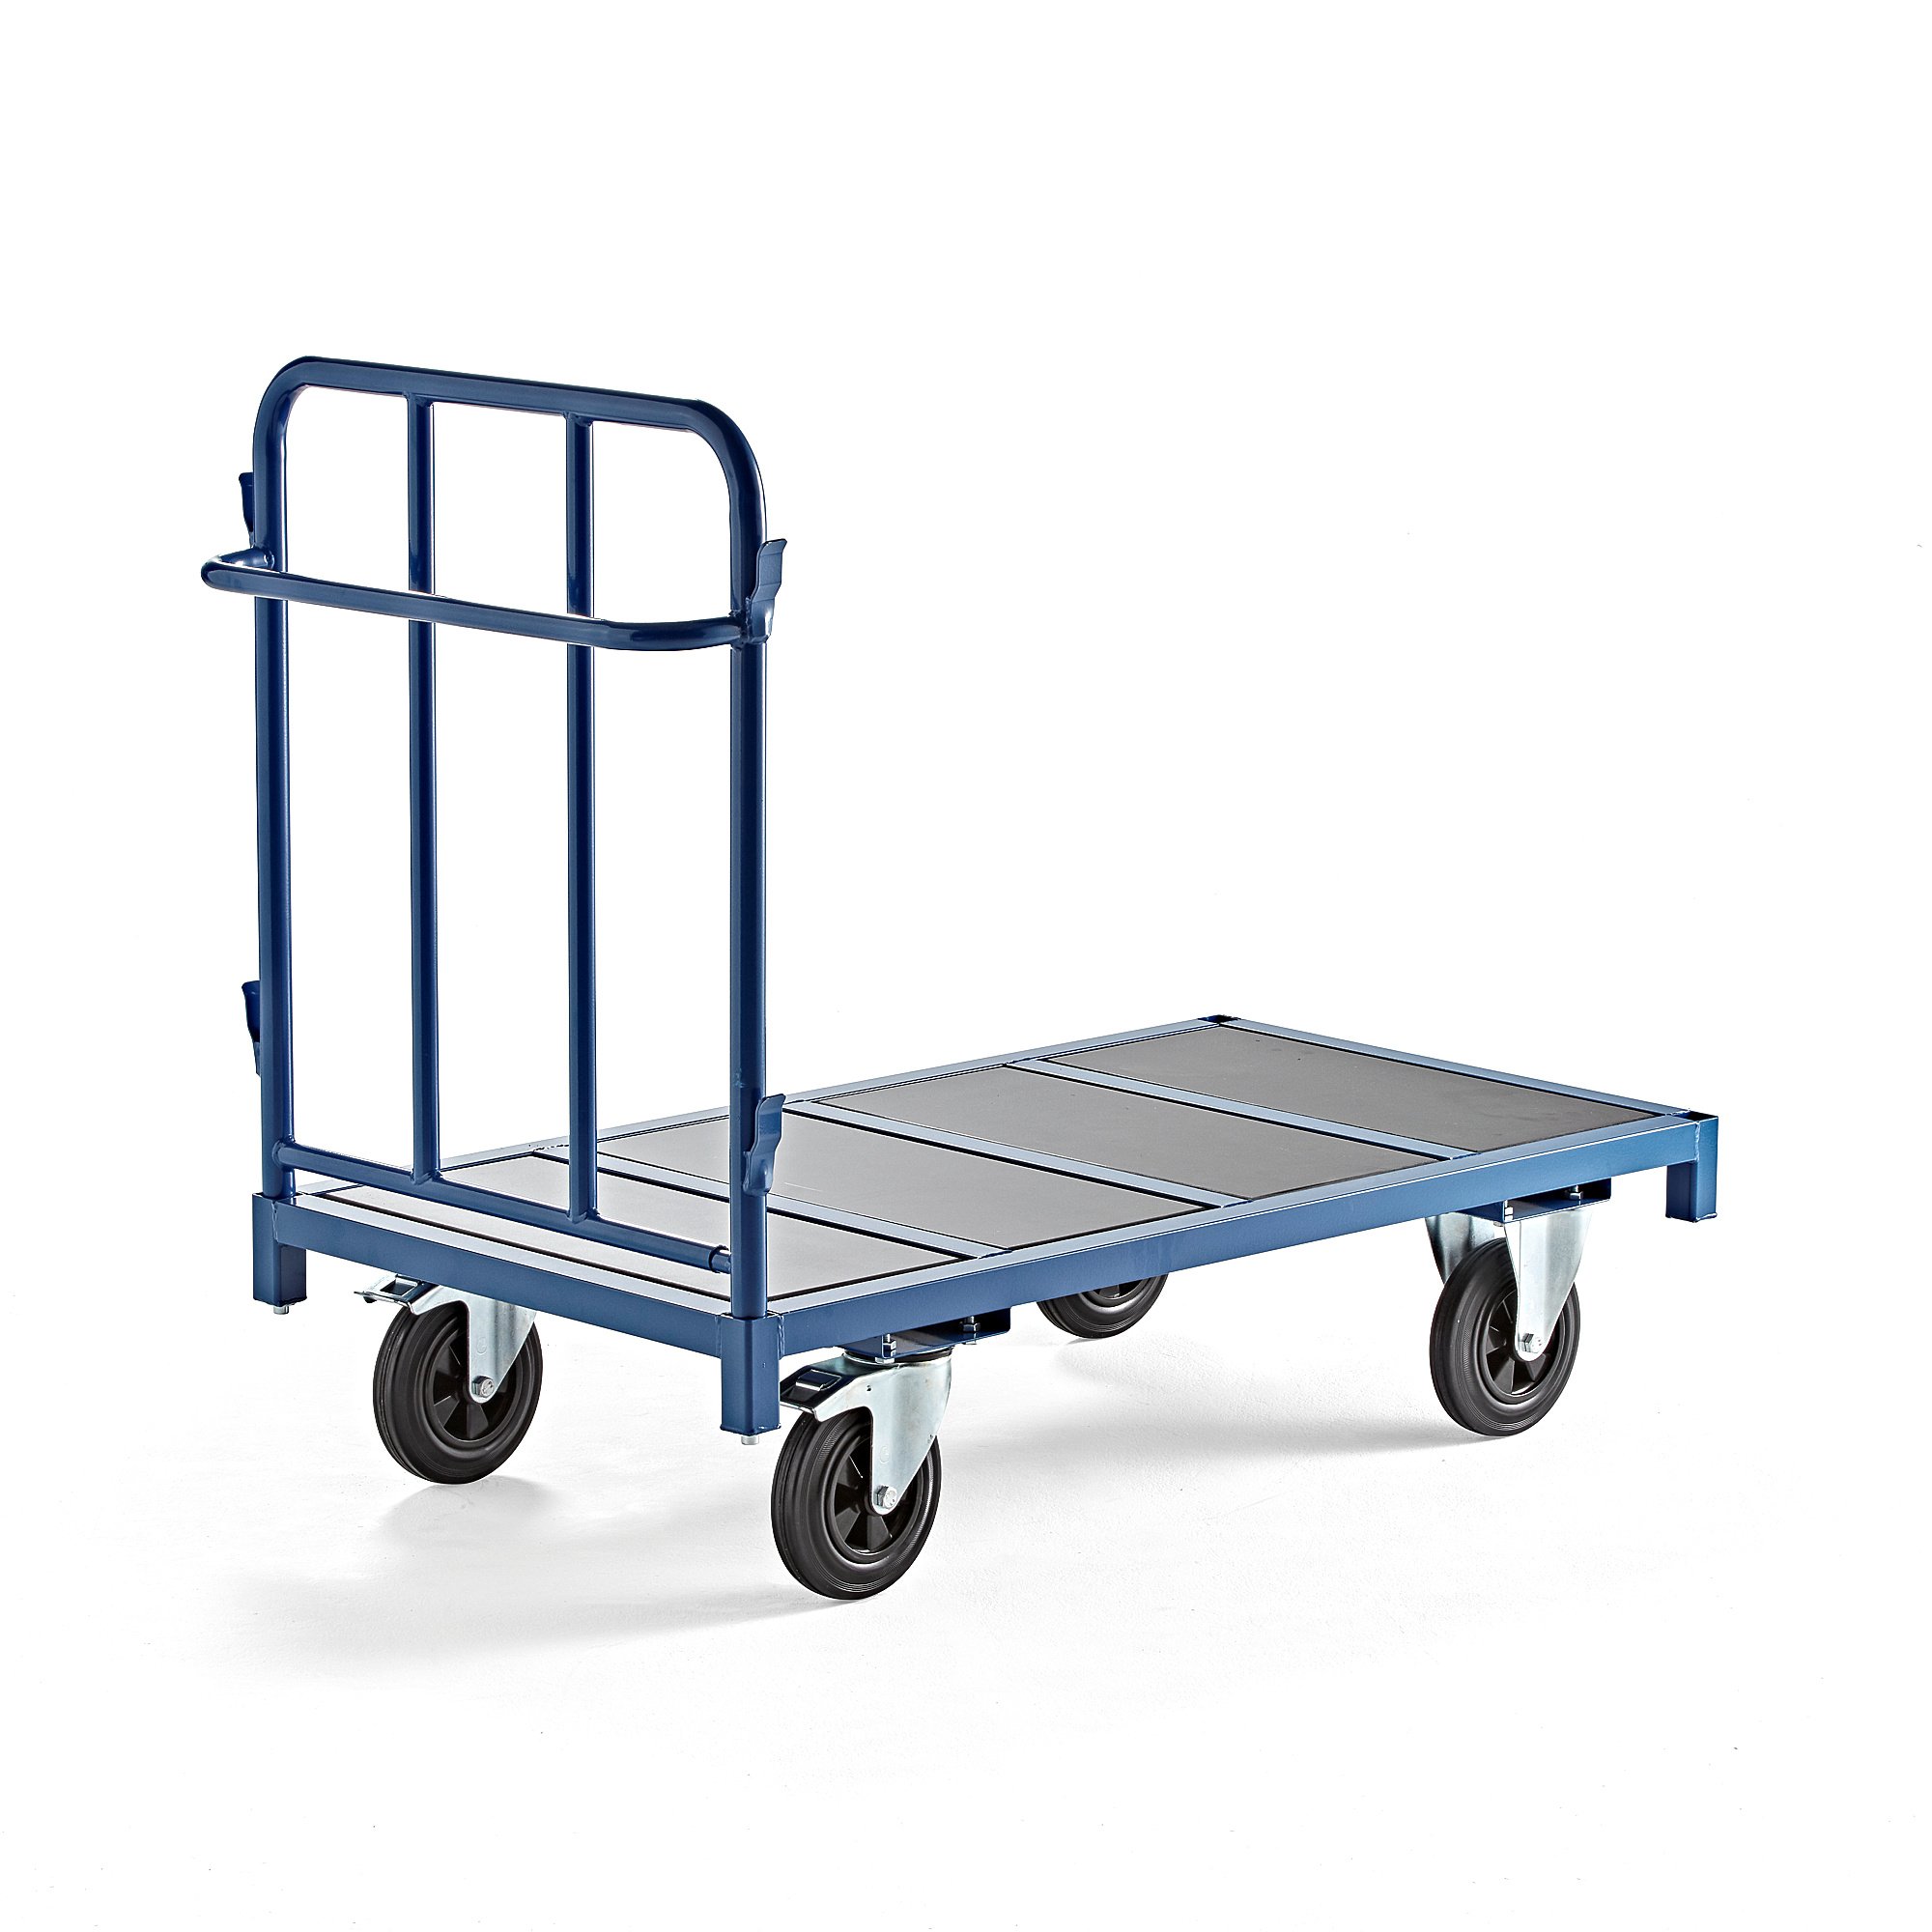 Plošinový vozík EMBARK, 1 stěna, 1300x700 mm, 600 kg, modrý